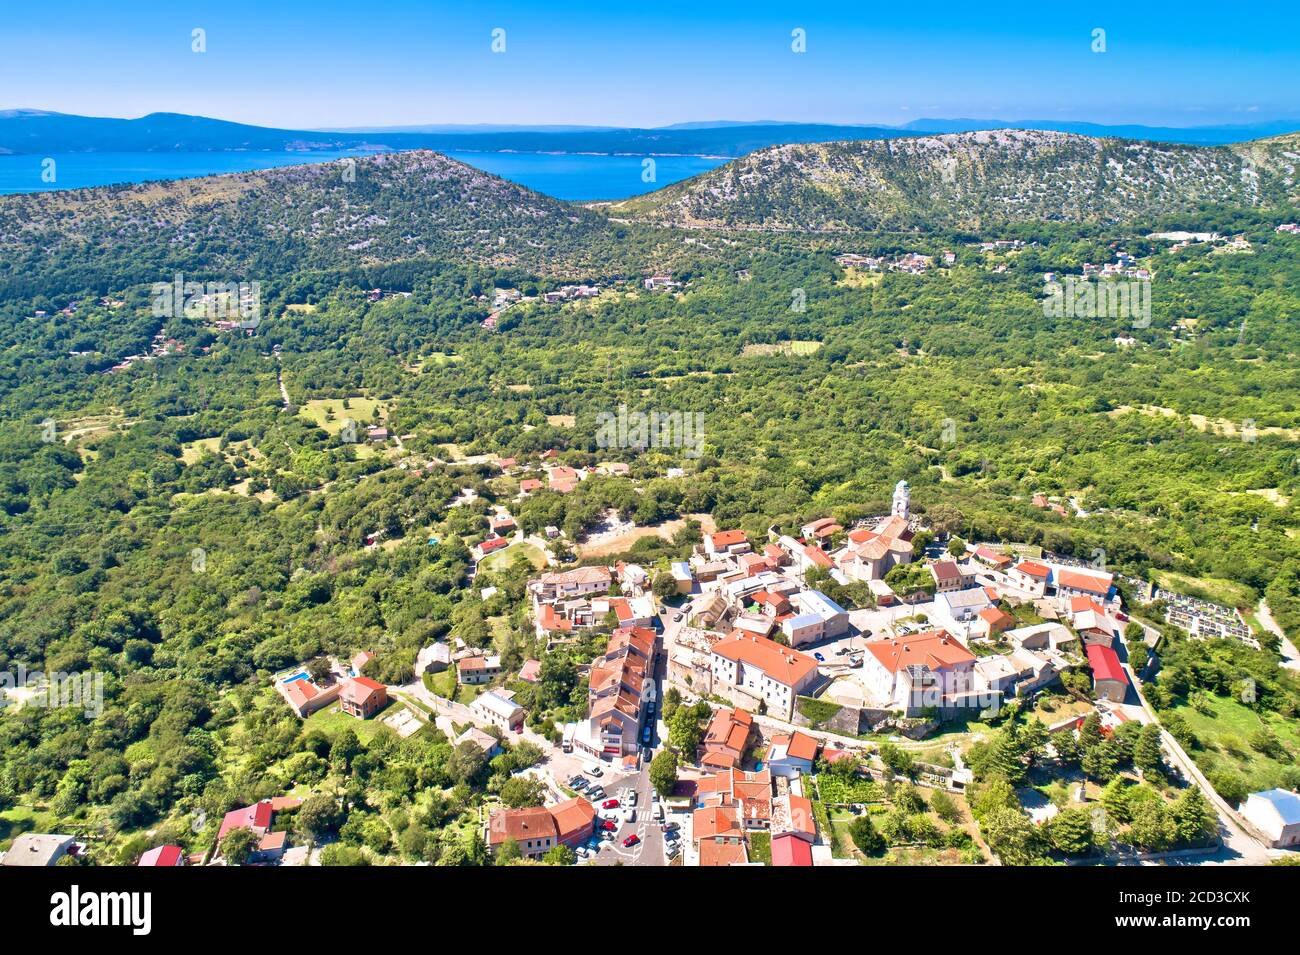 Historic town of Bribir in Vinodol valley aerial view, Kvarner region of Croatia Stock Photo